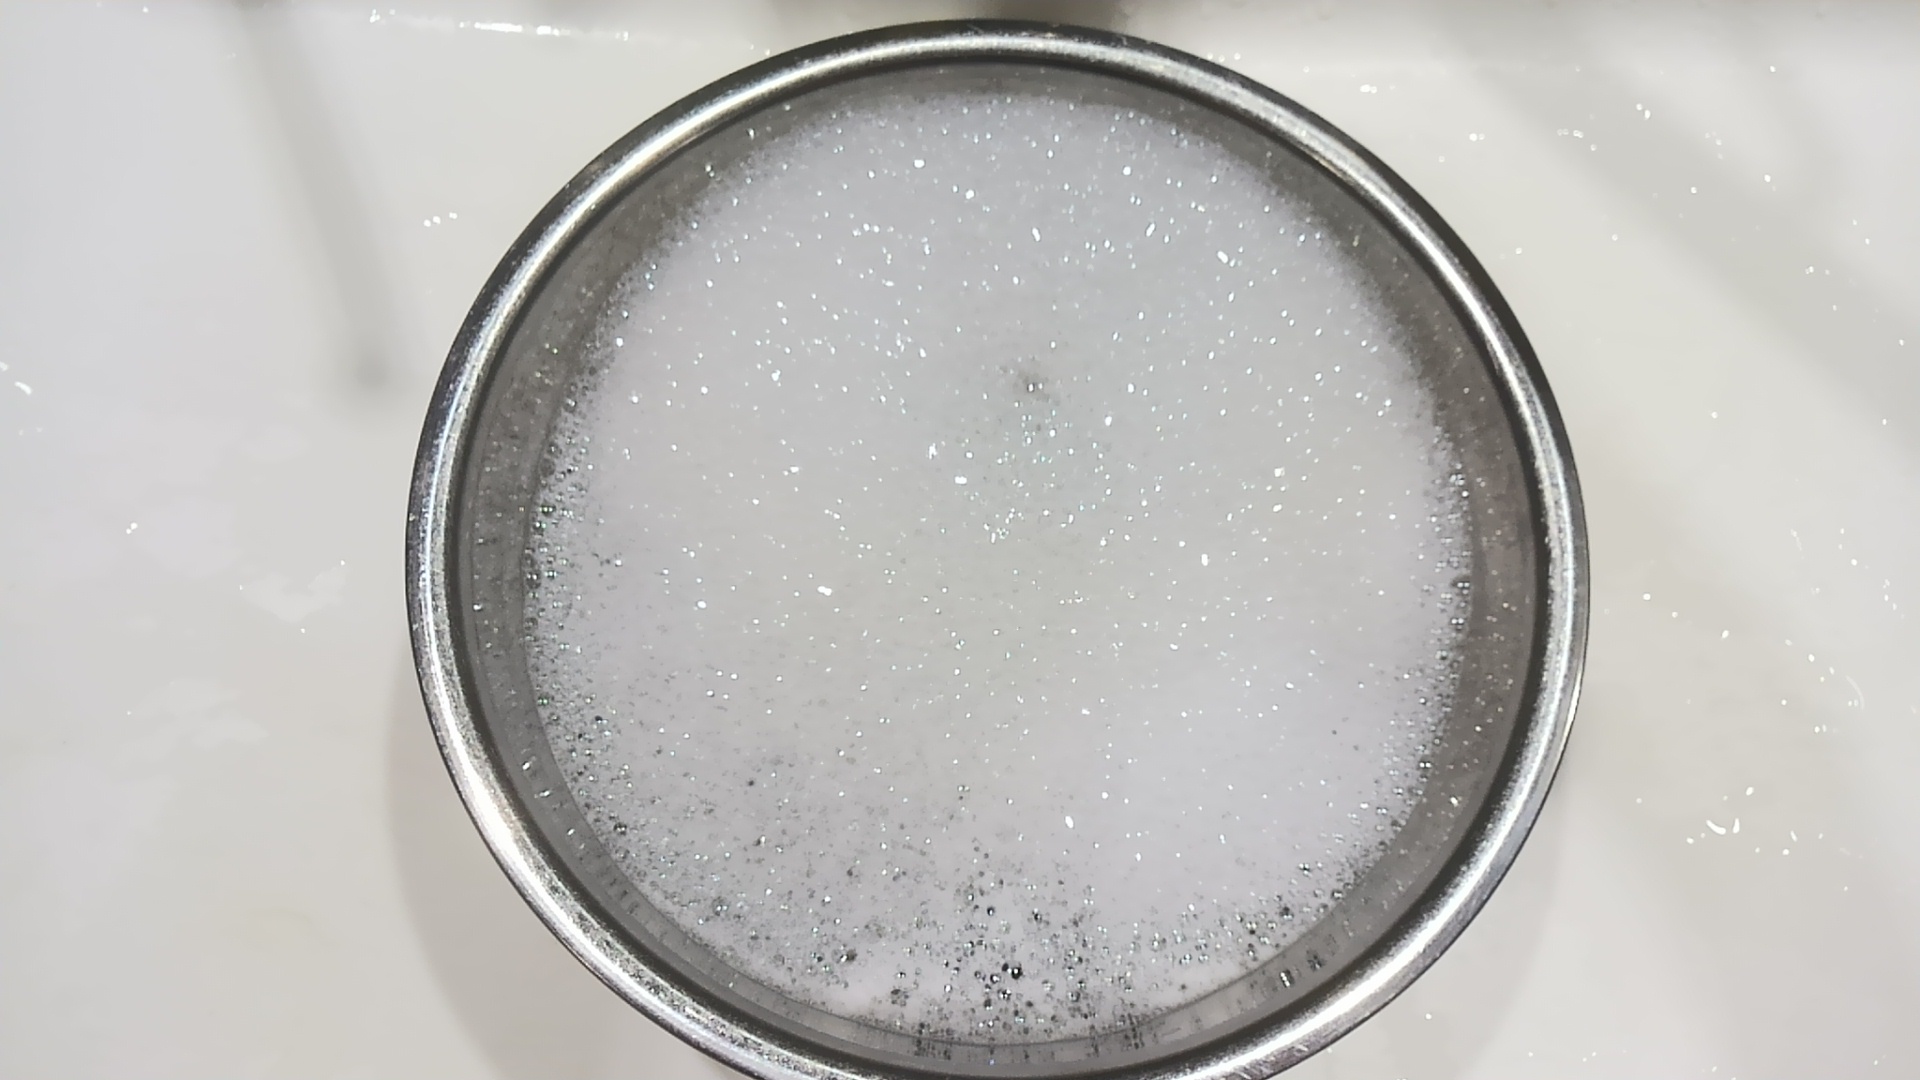 キャベツの白い粉を落とす食器用洗剤入りの水